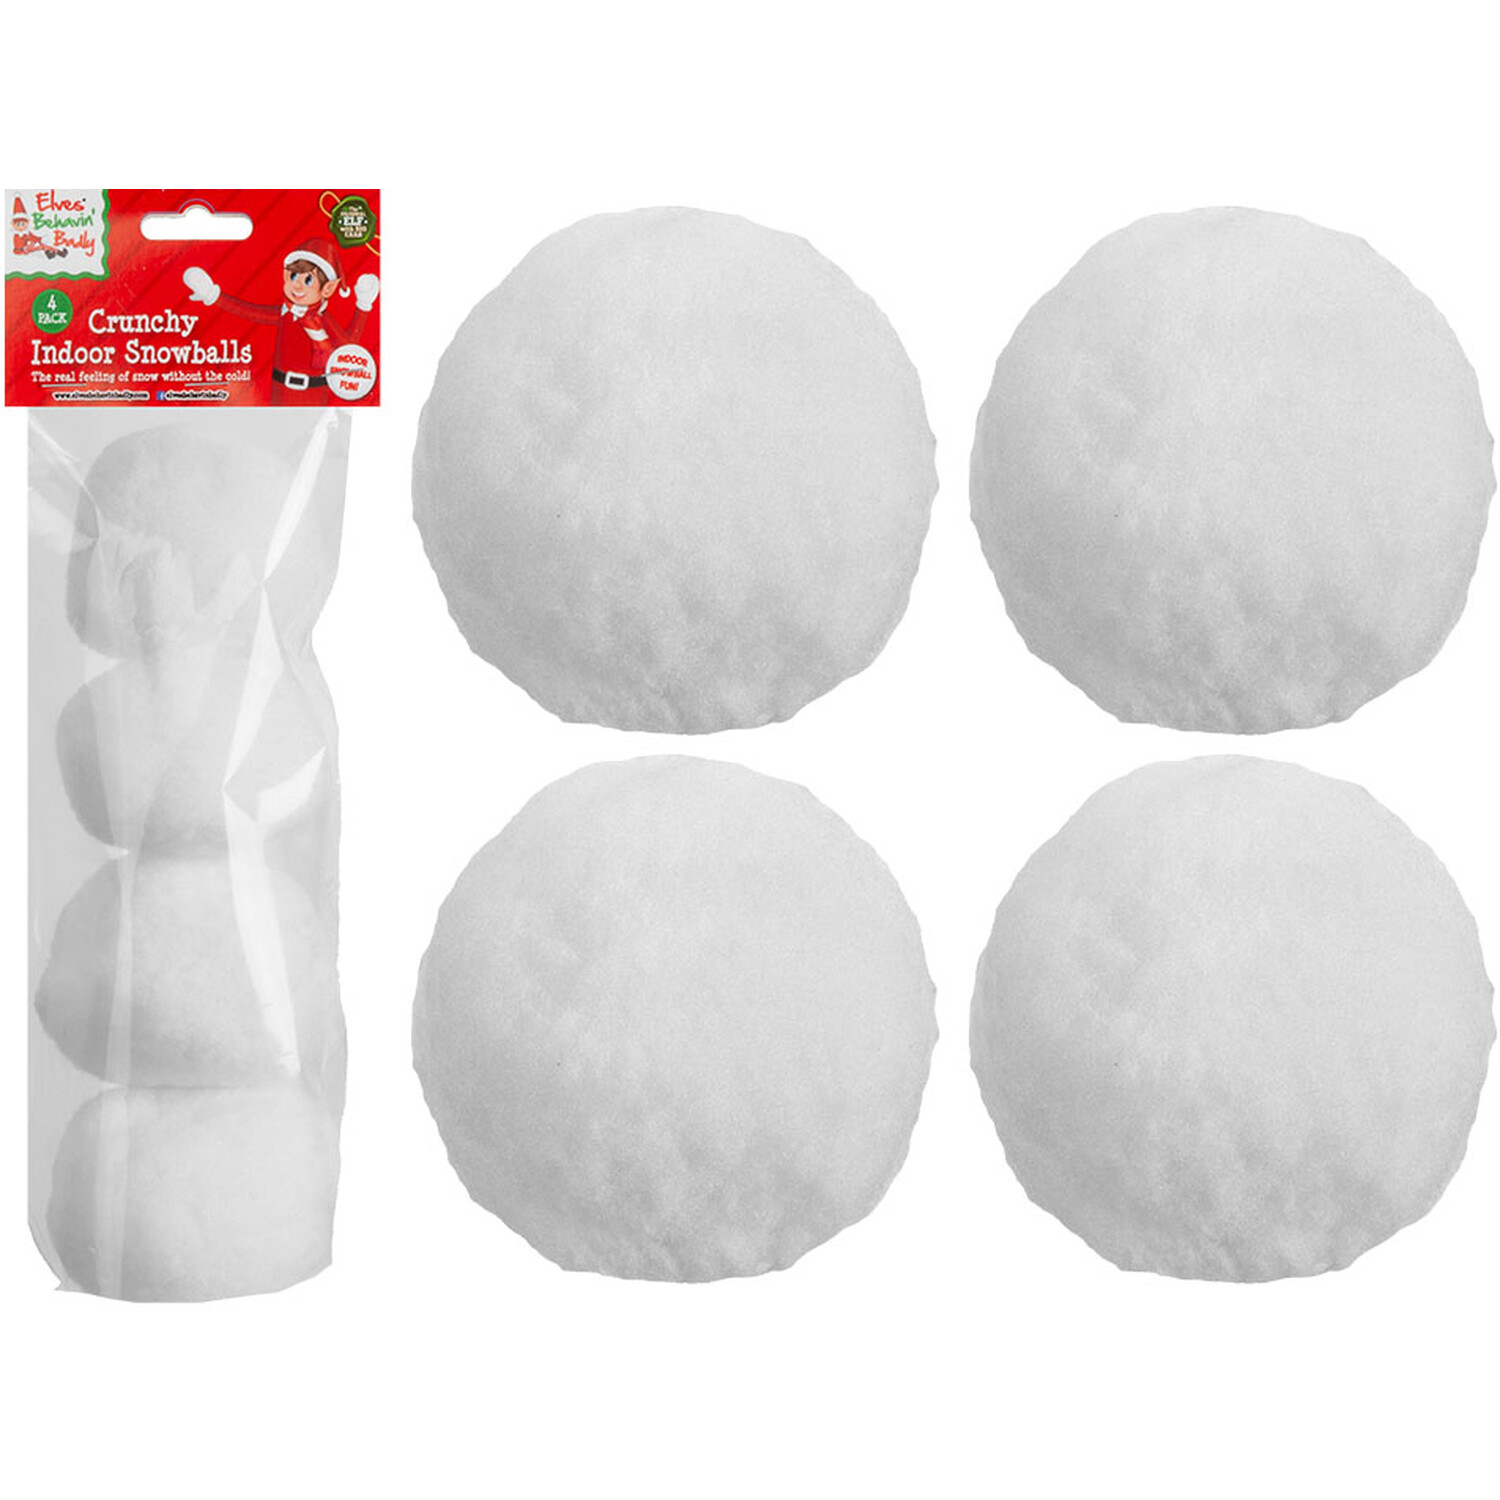 Pack of 4 Indoor Snowballs Image